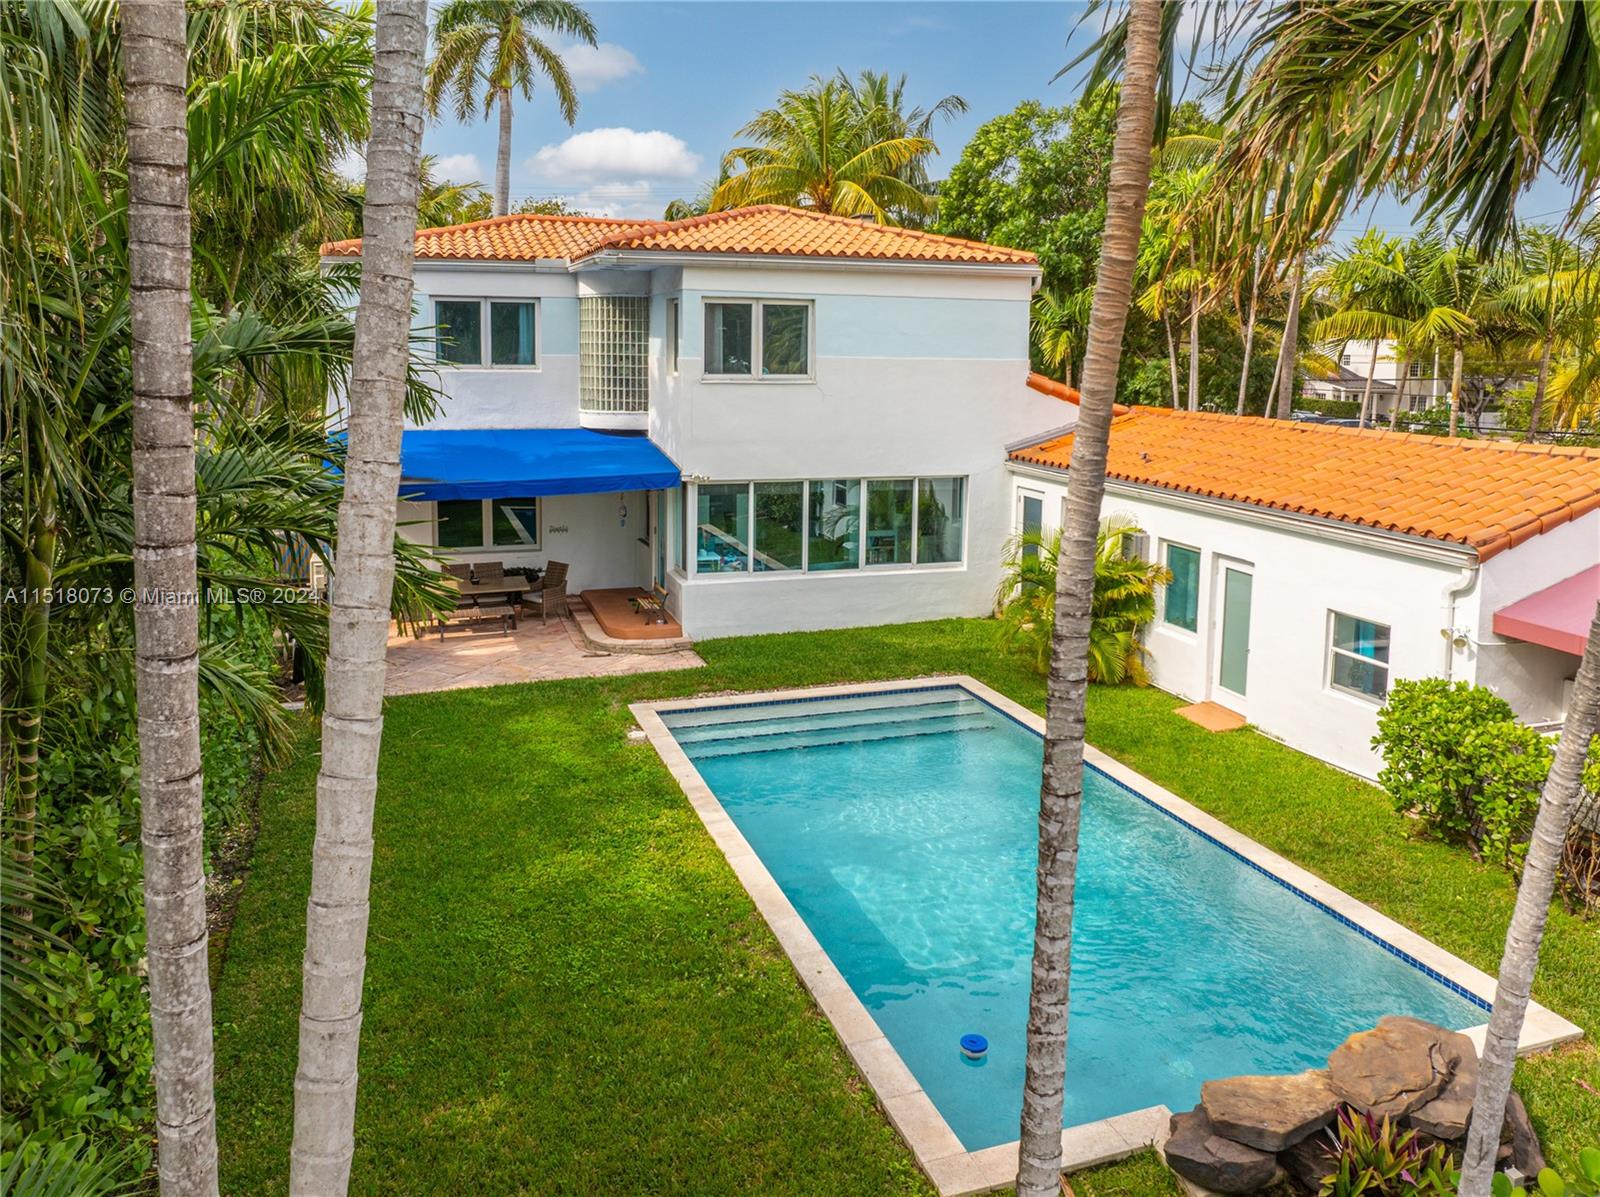 Property for Sale at 4585 Alton Rd, Miami Beach, Miami-Dade County, Florida - Bedrooms: 5 
Bathrooms: 6  - $2,995,000